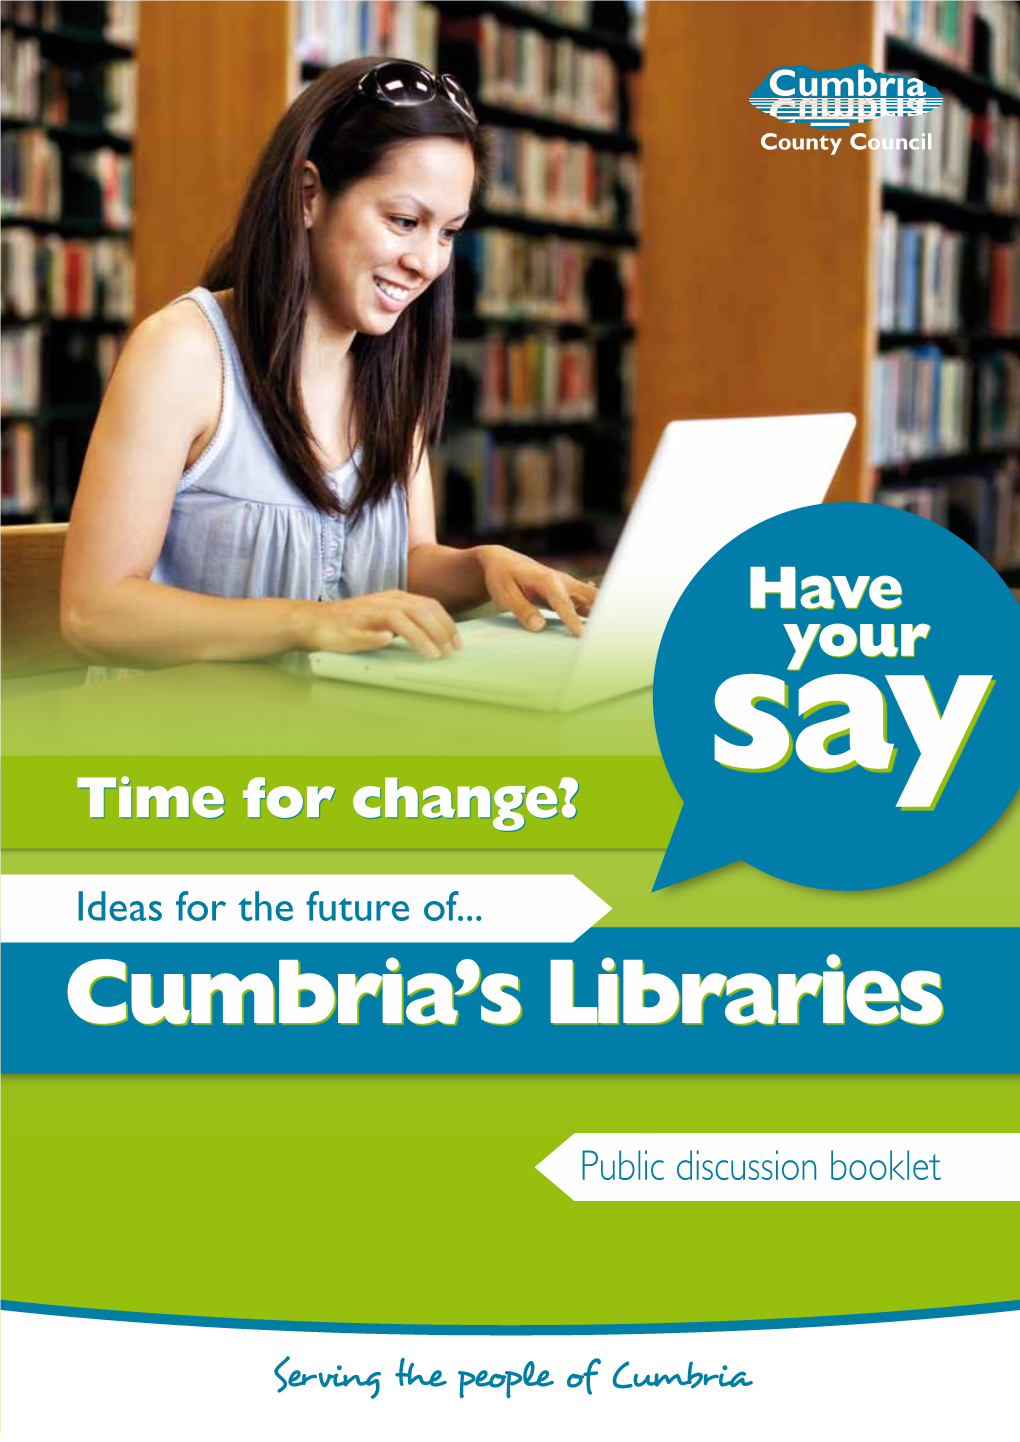 Cumbria's Libraries